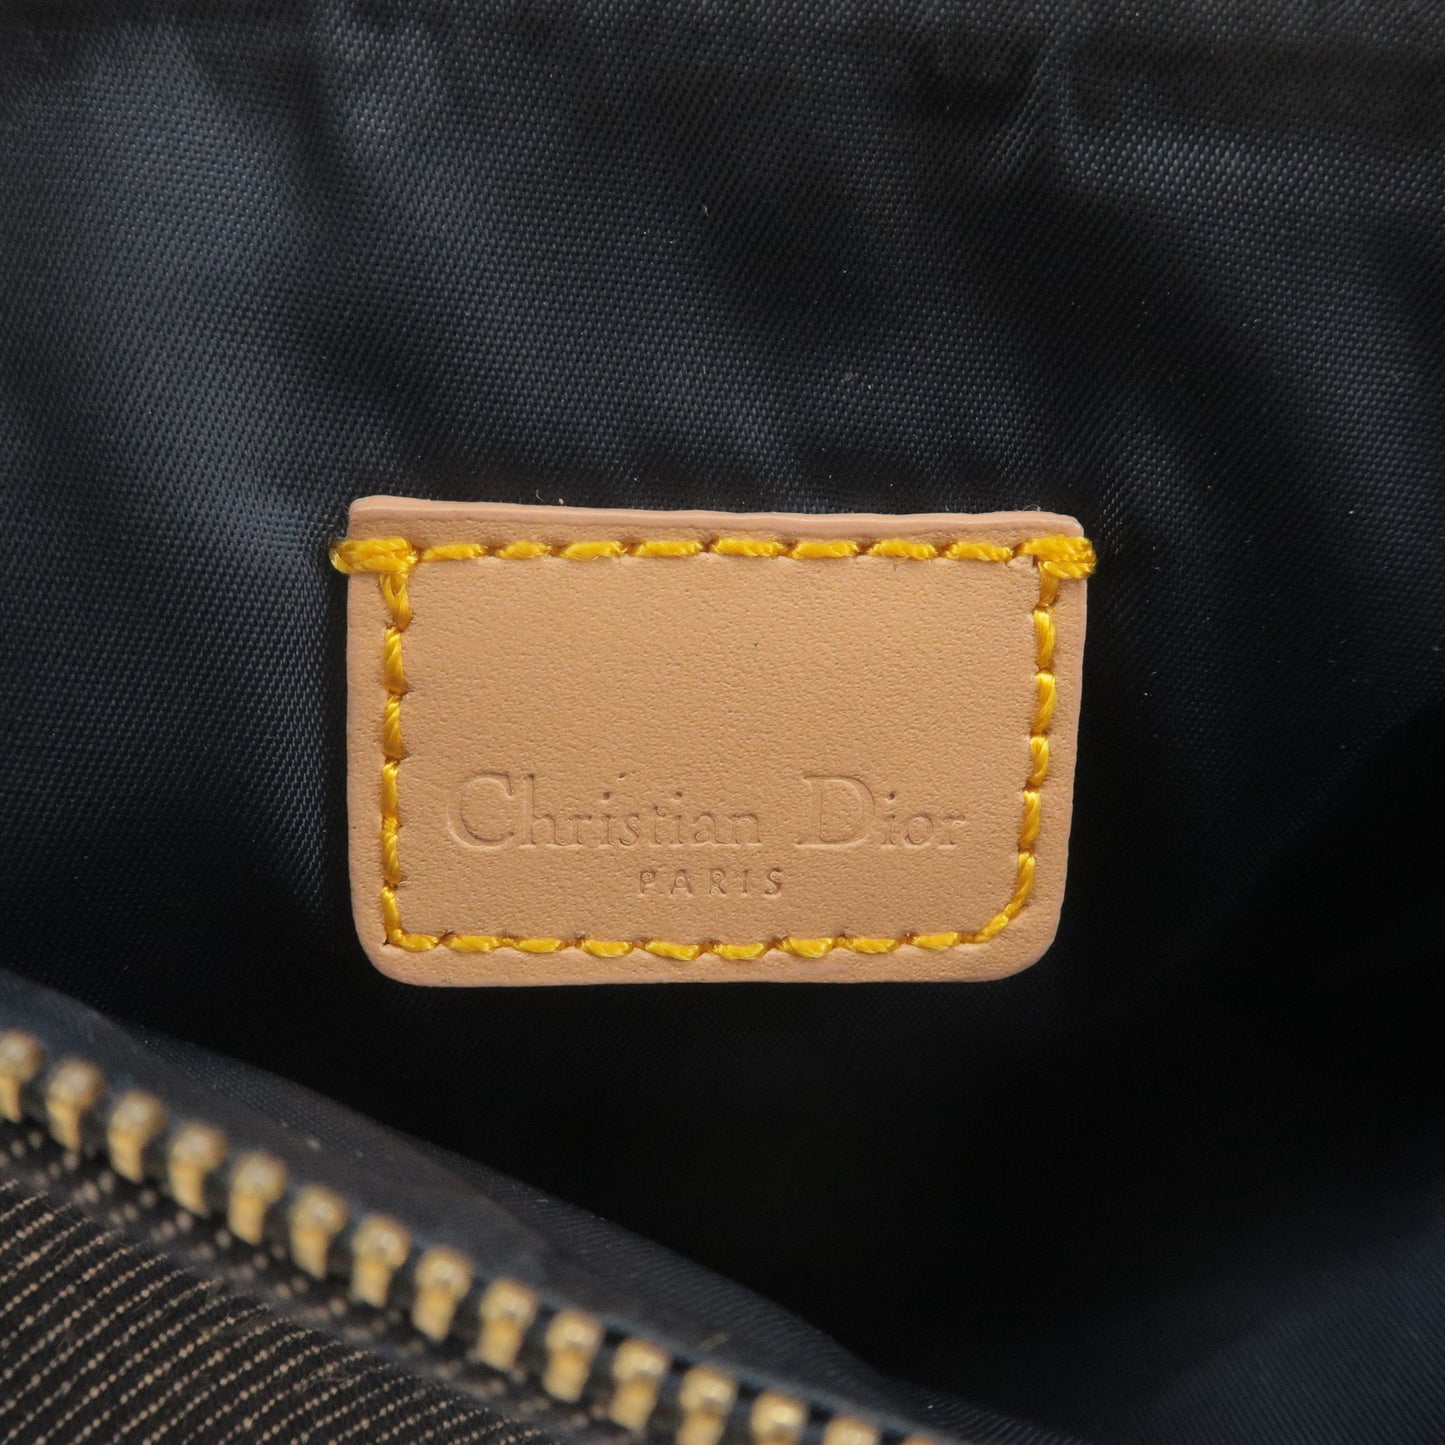 Christian Dior Denim Leather Saddle Bag Shoulder Bag Navy